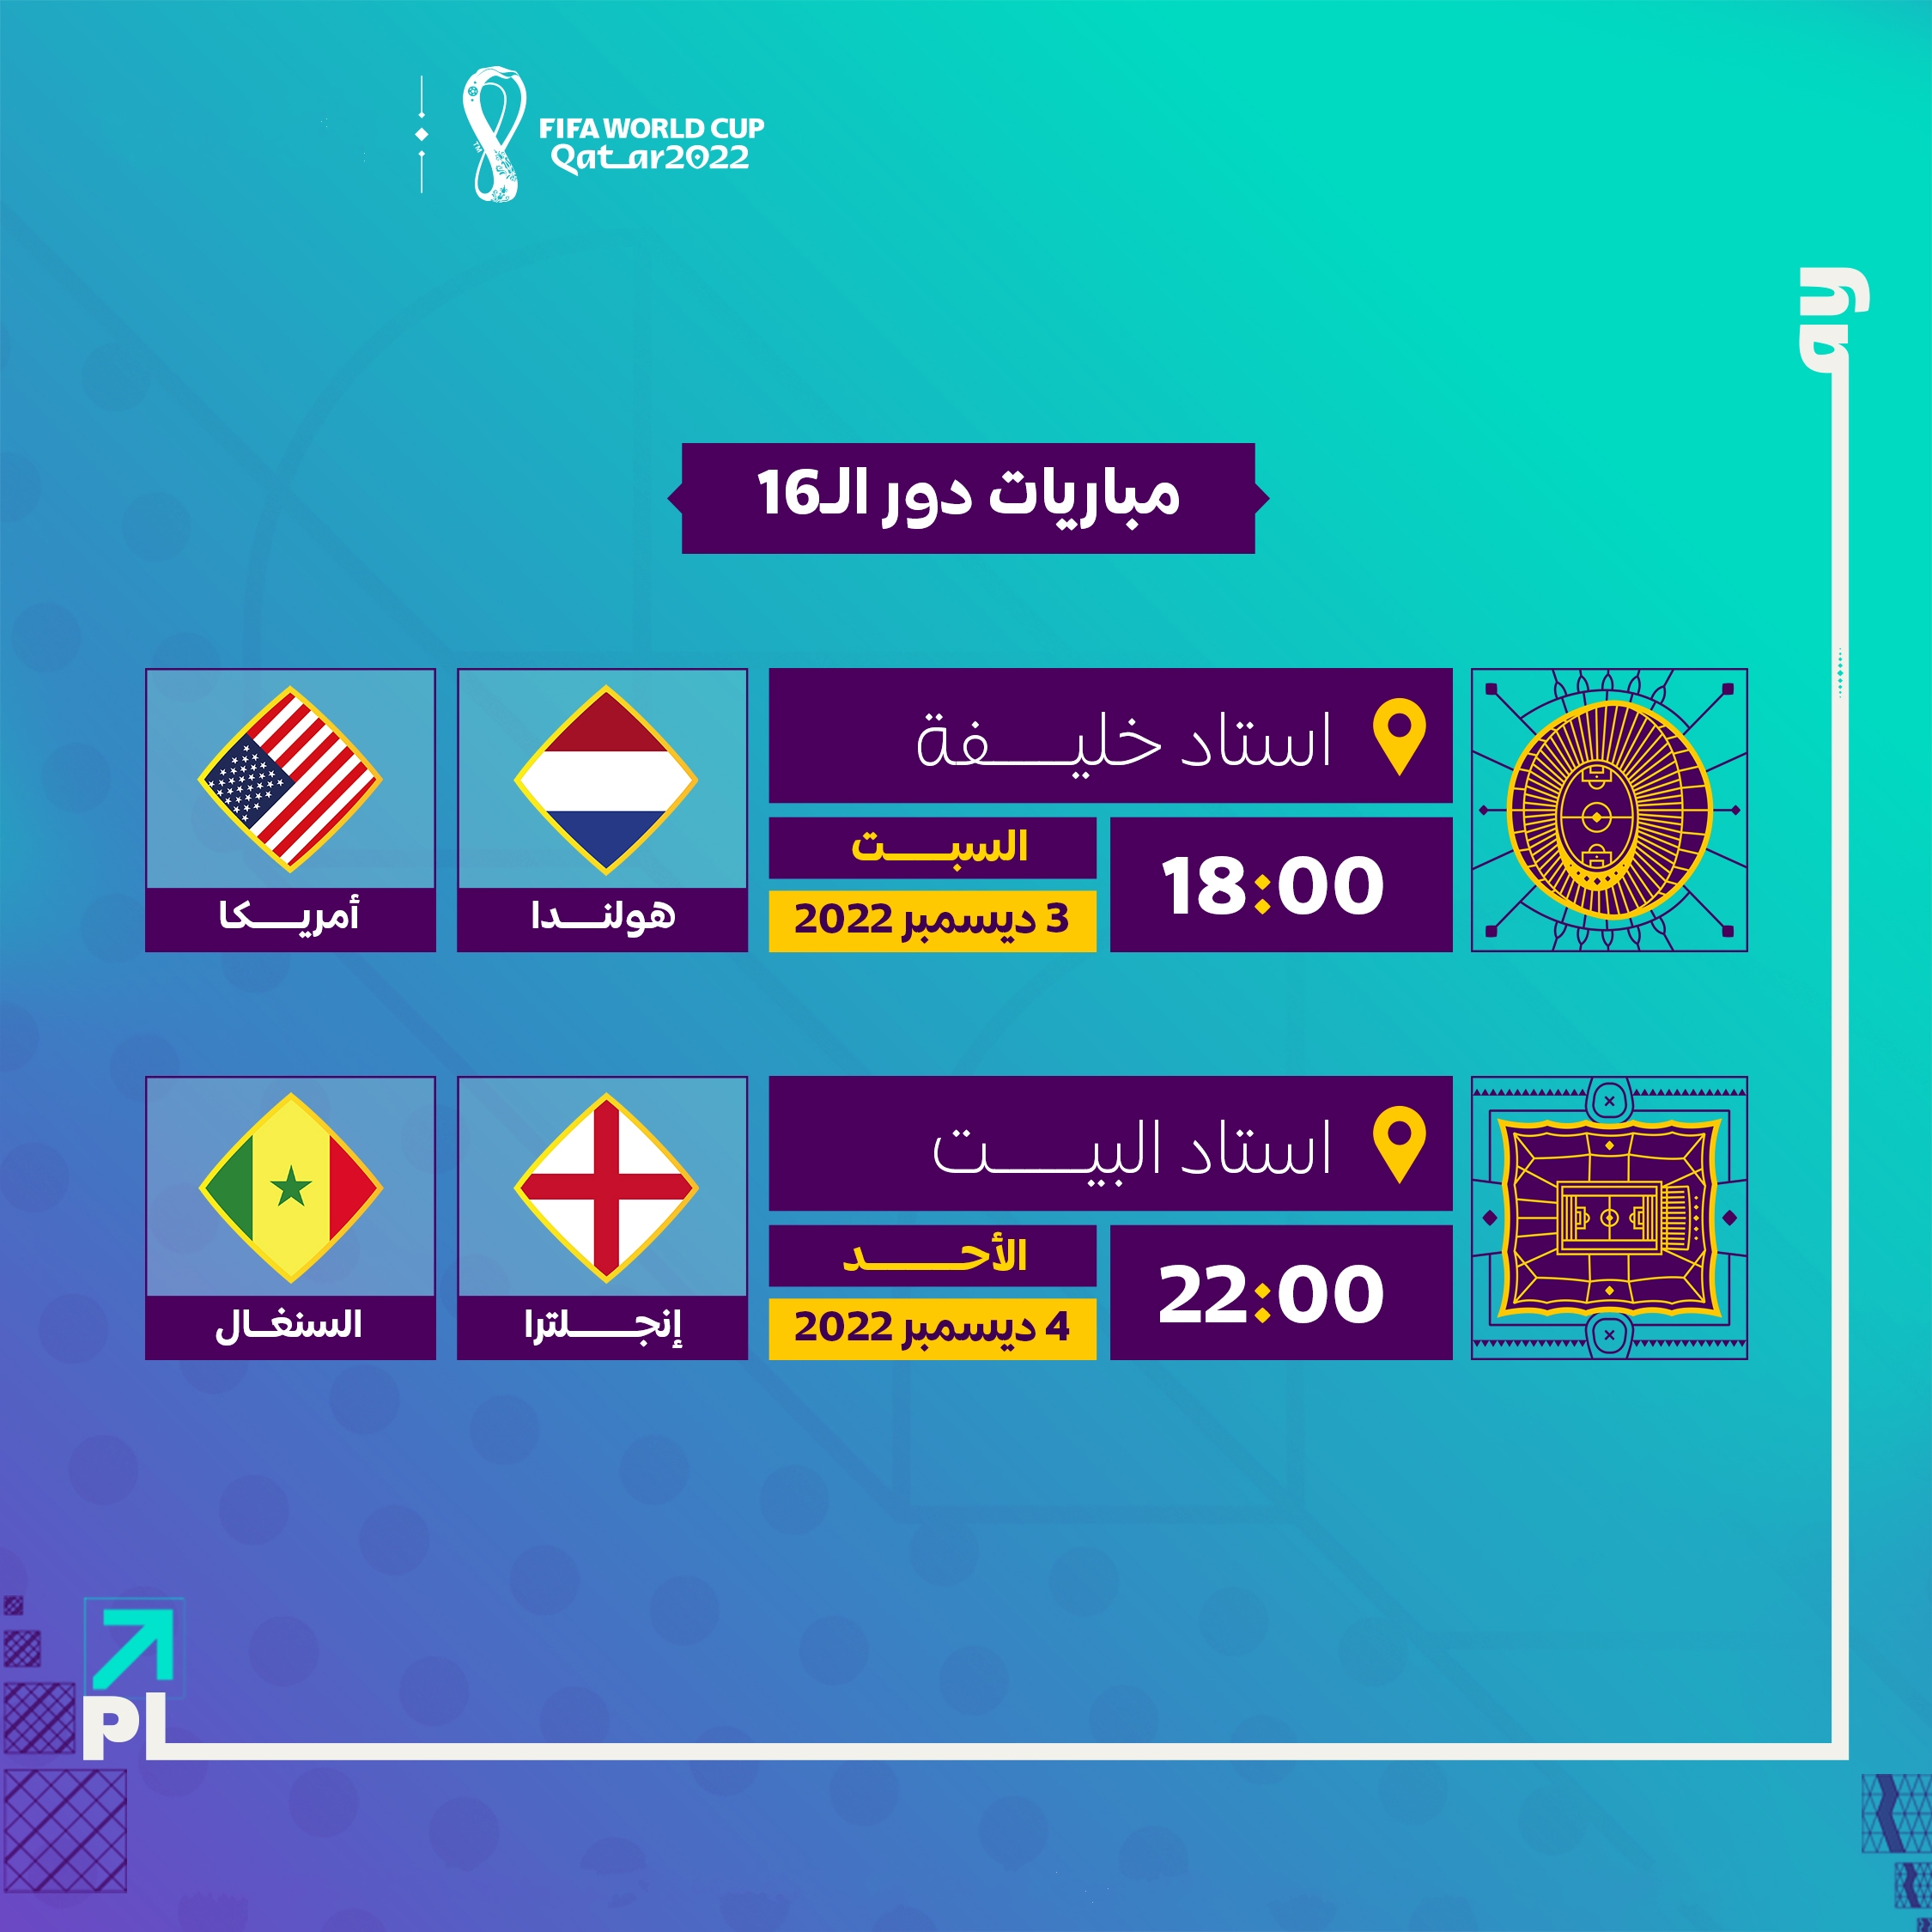 مواجهات دور الـ16 في كأس العالم فيفا قطر 2022 عن المجموعتين الأولى والثانية